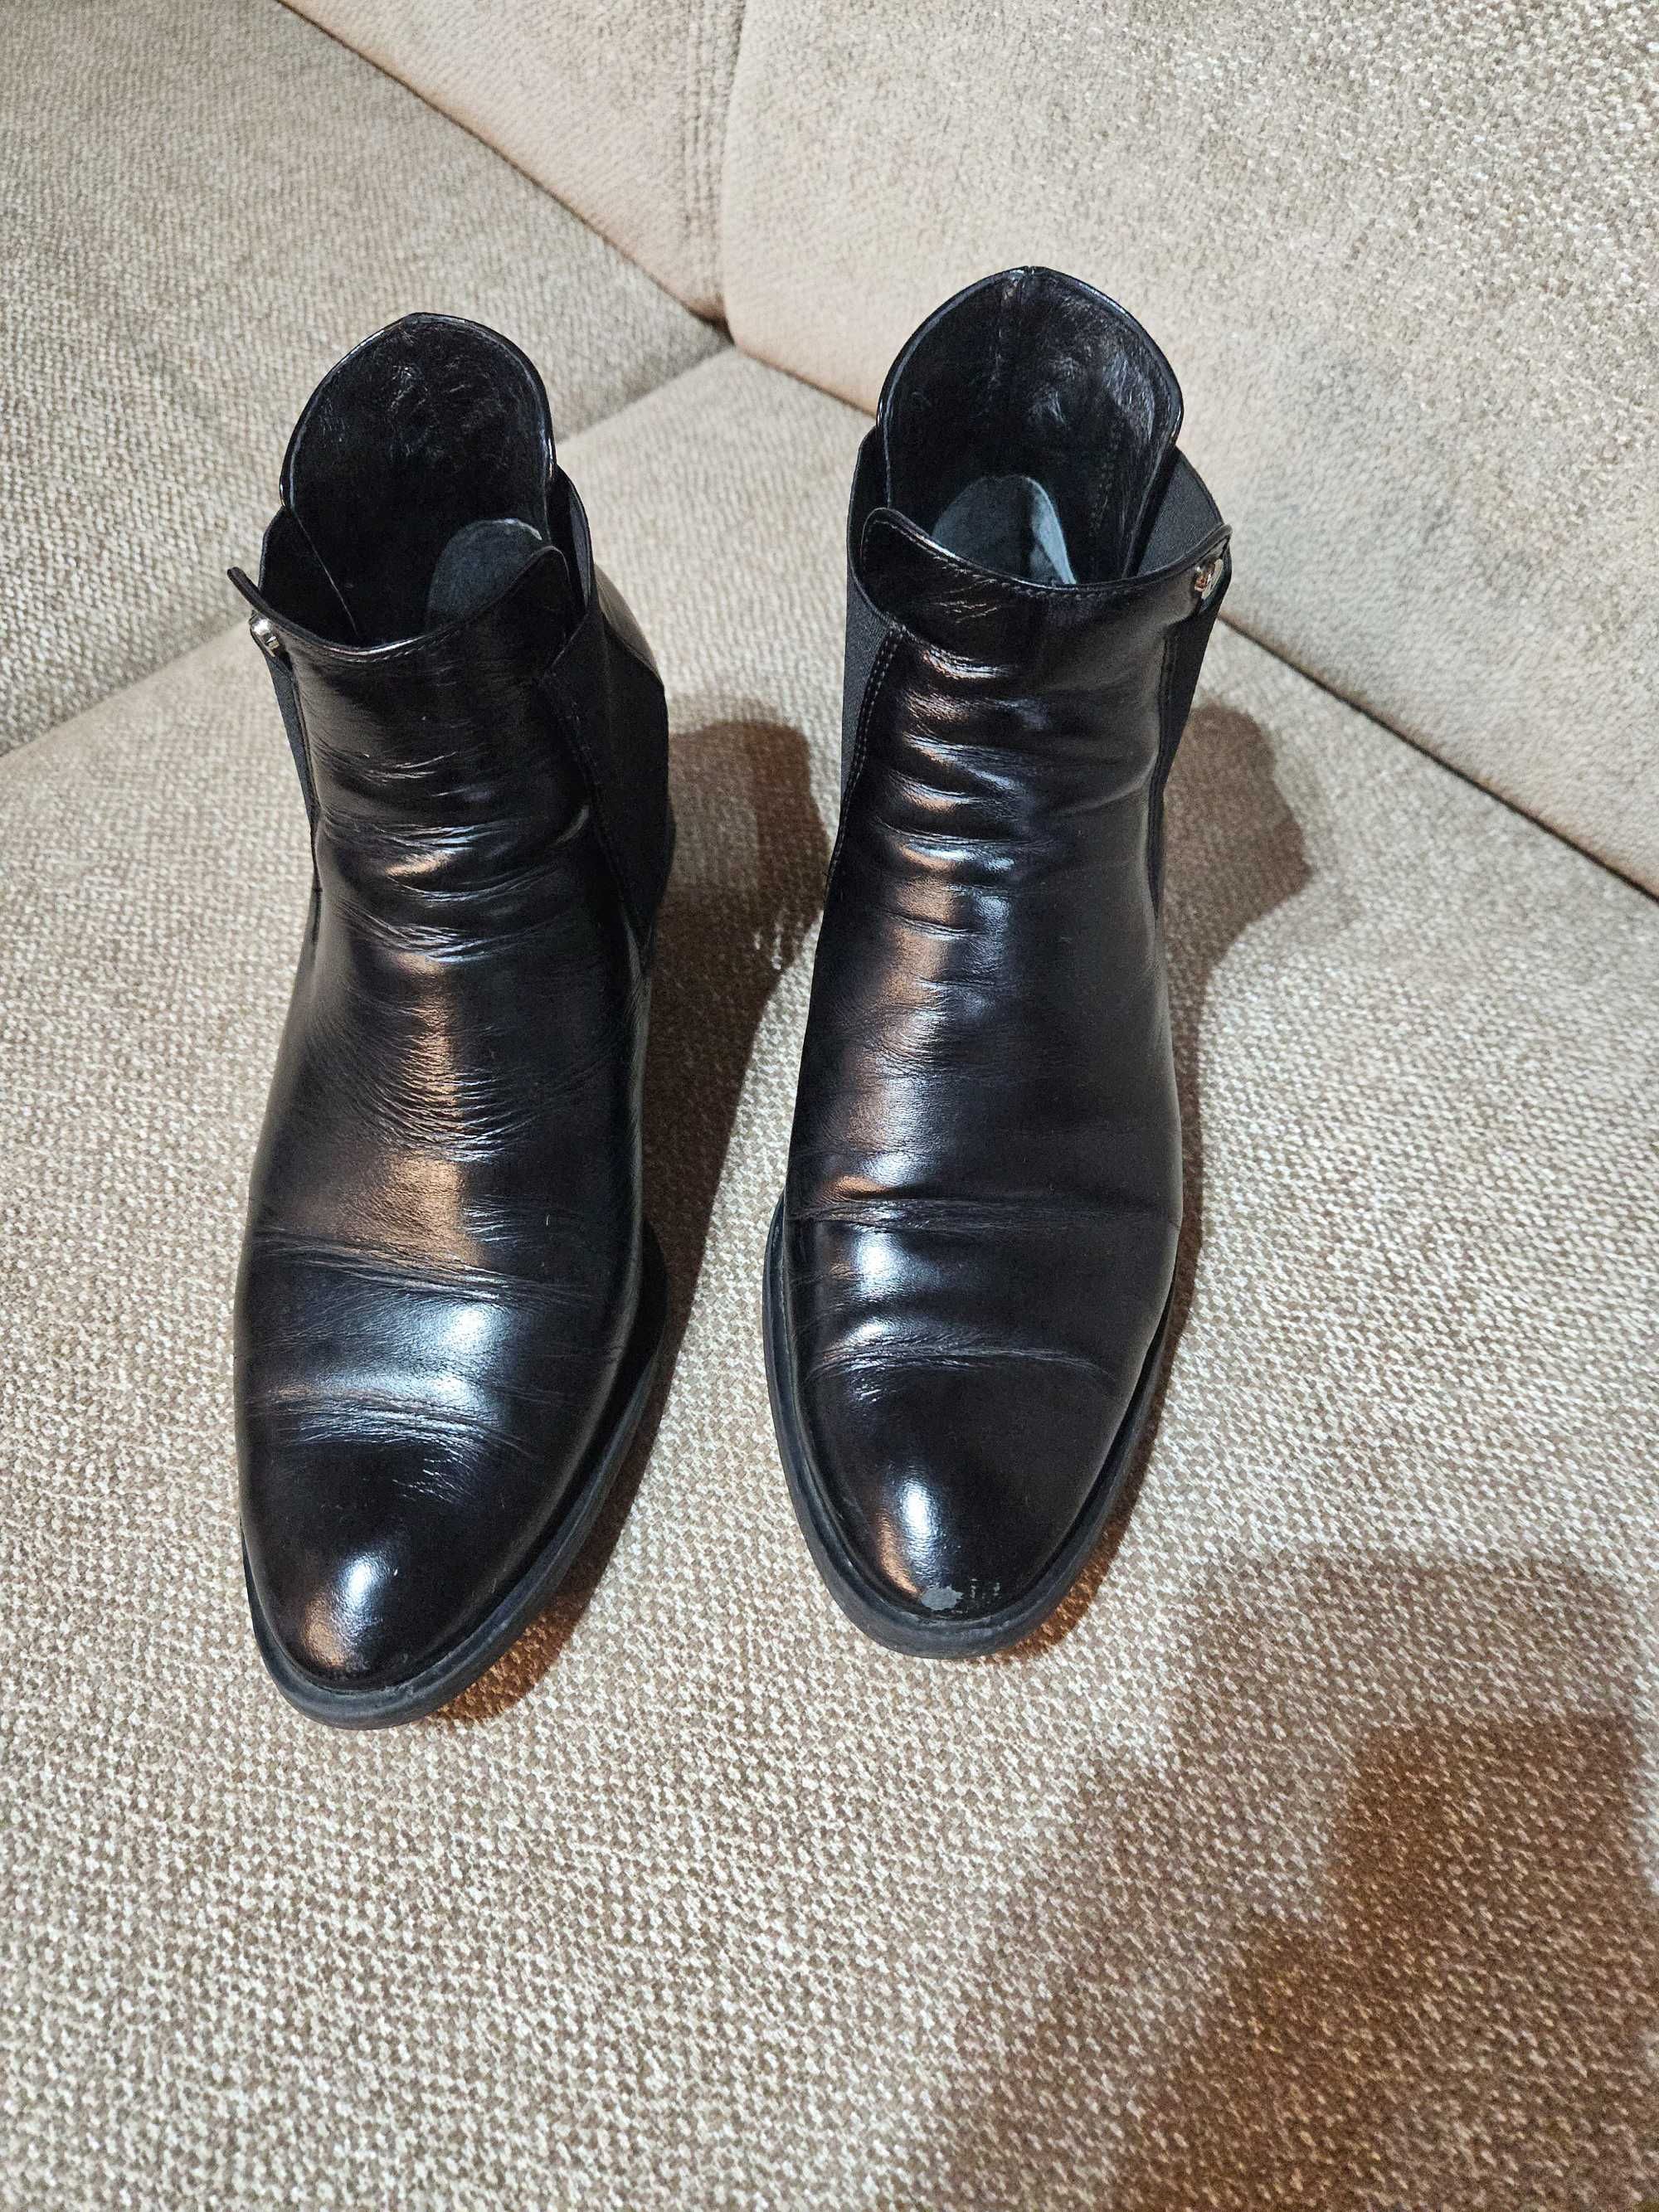 Buty damskie Venezia czarne skórzane rozmiar 39